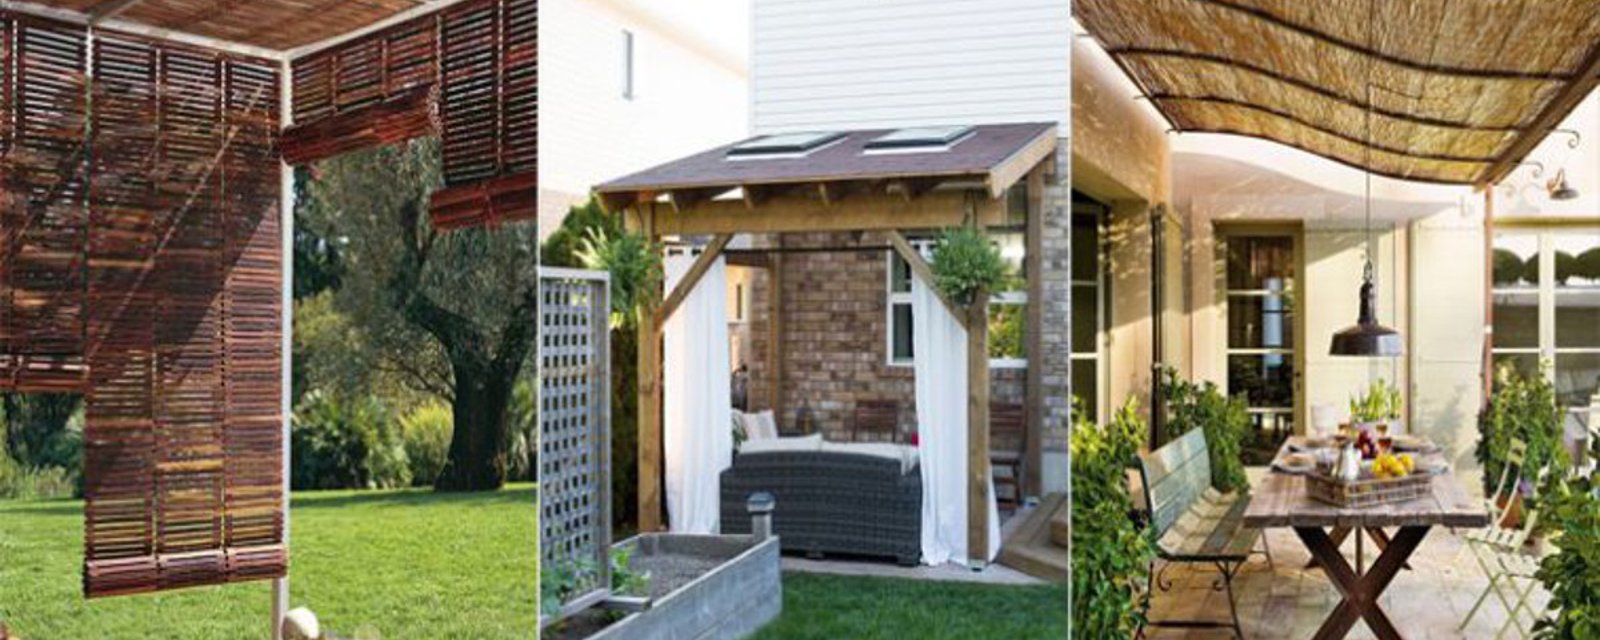 10 façons originales de faire de l'ombre sur votre terrasse pour profiter au maximum, de votre jardin! 